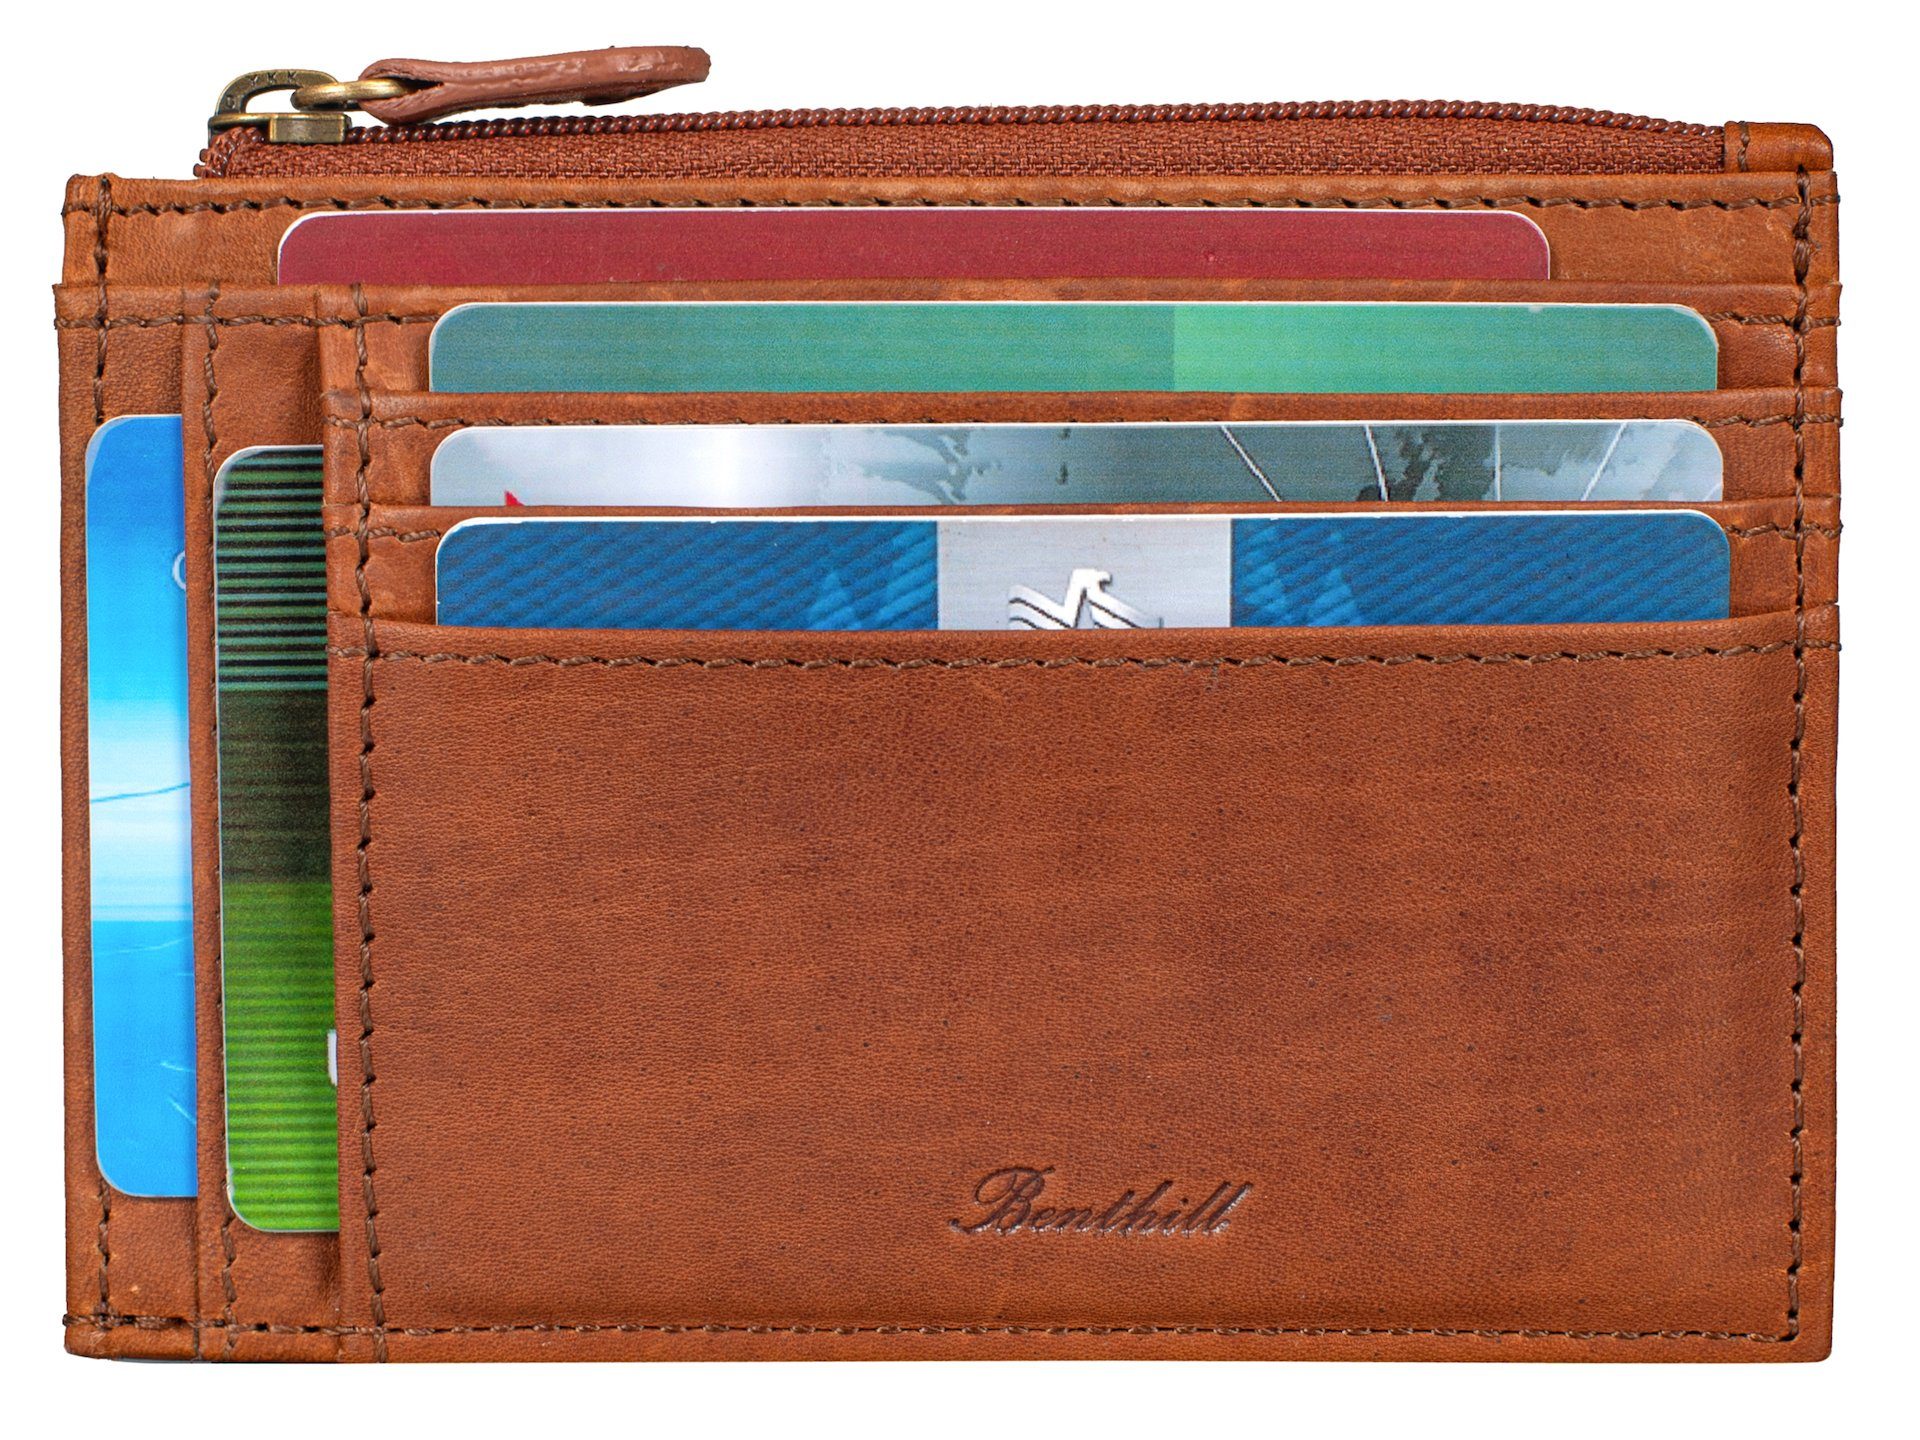 Braun Kartenetui Benthill Leder Mini Portemonnaie Echt RFID-Schutz Slim Wallet, Münzfach Kartenfächer Geldbörse Reißverschlussfach Kreditkartenetui